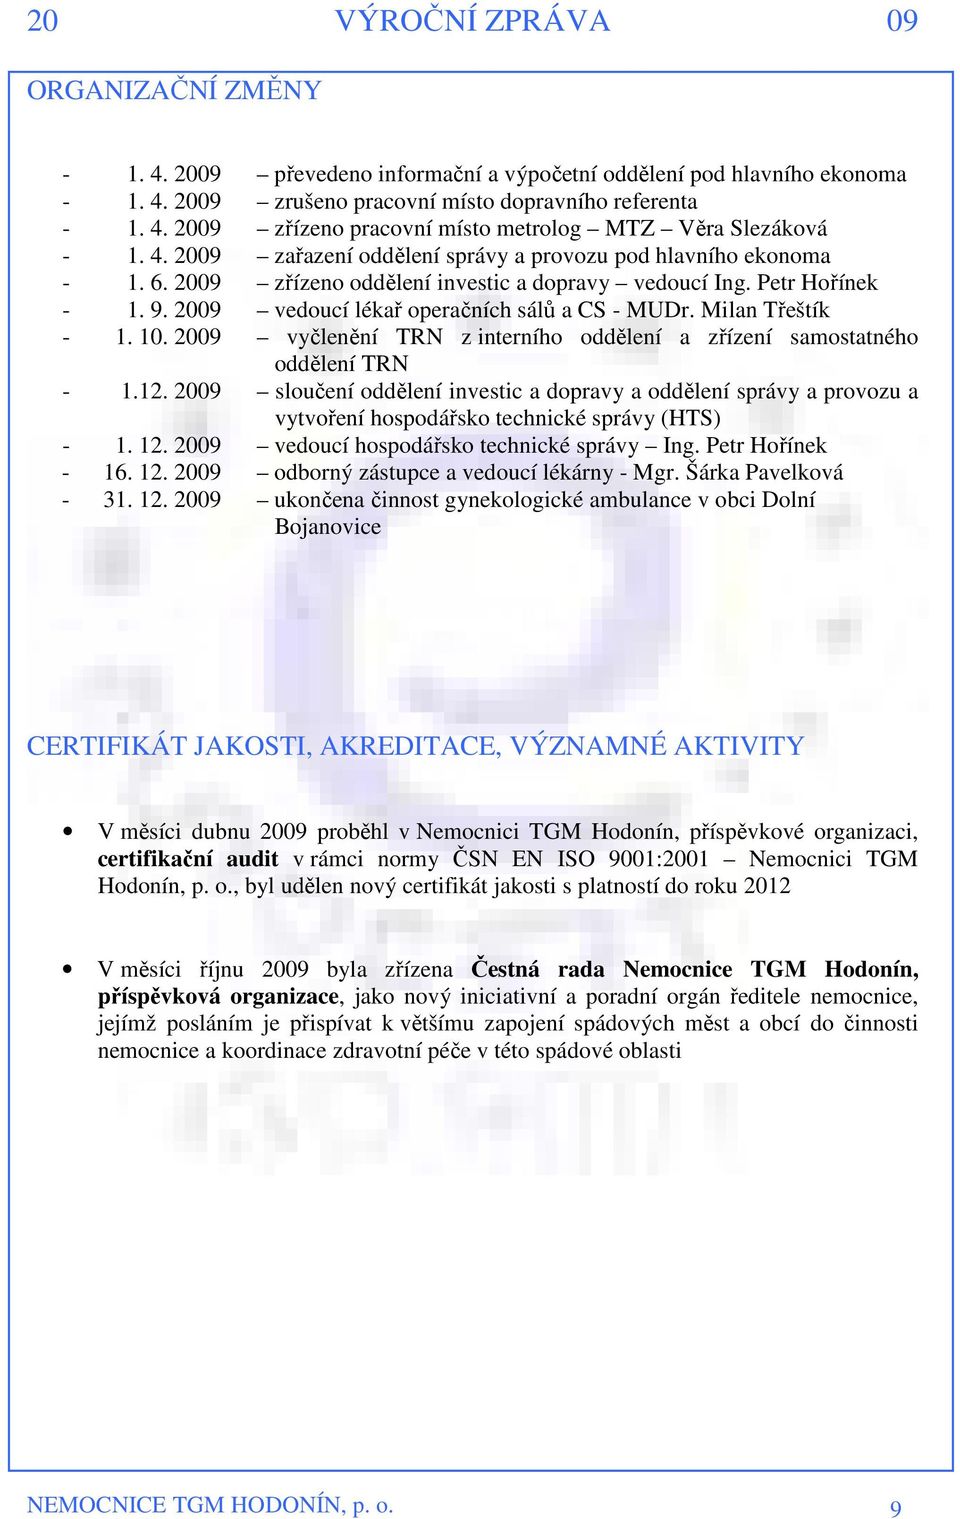 Milan Třeštík - 1. 10. 2009 vyčlenění TRN z interního oddělení a zřízení samostatného oddělení TRN - 1.12.